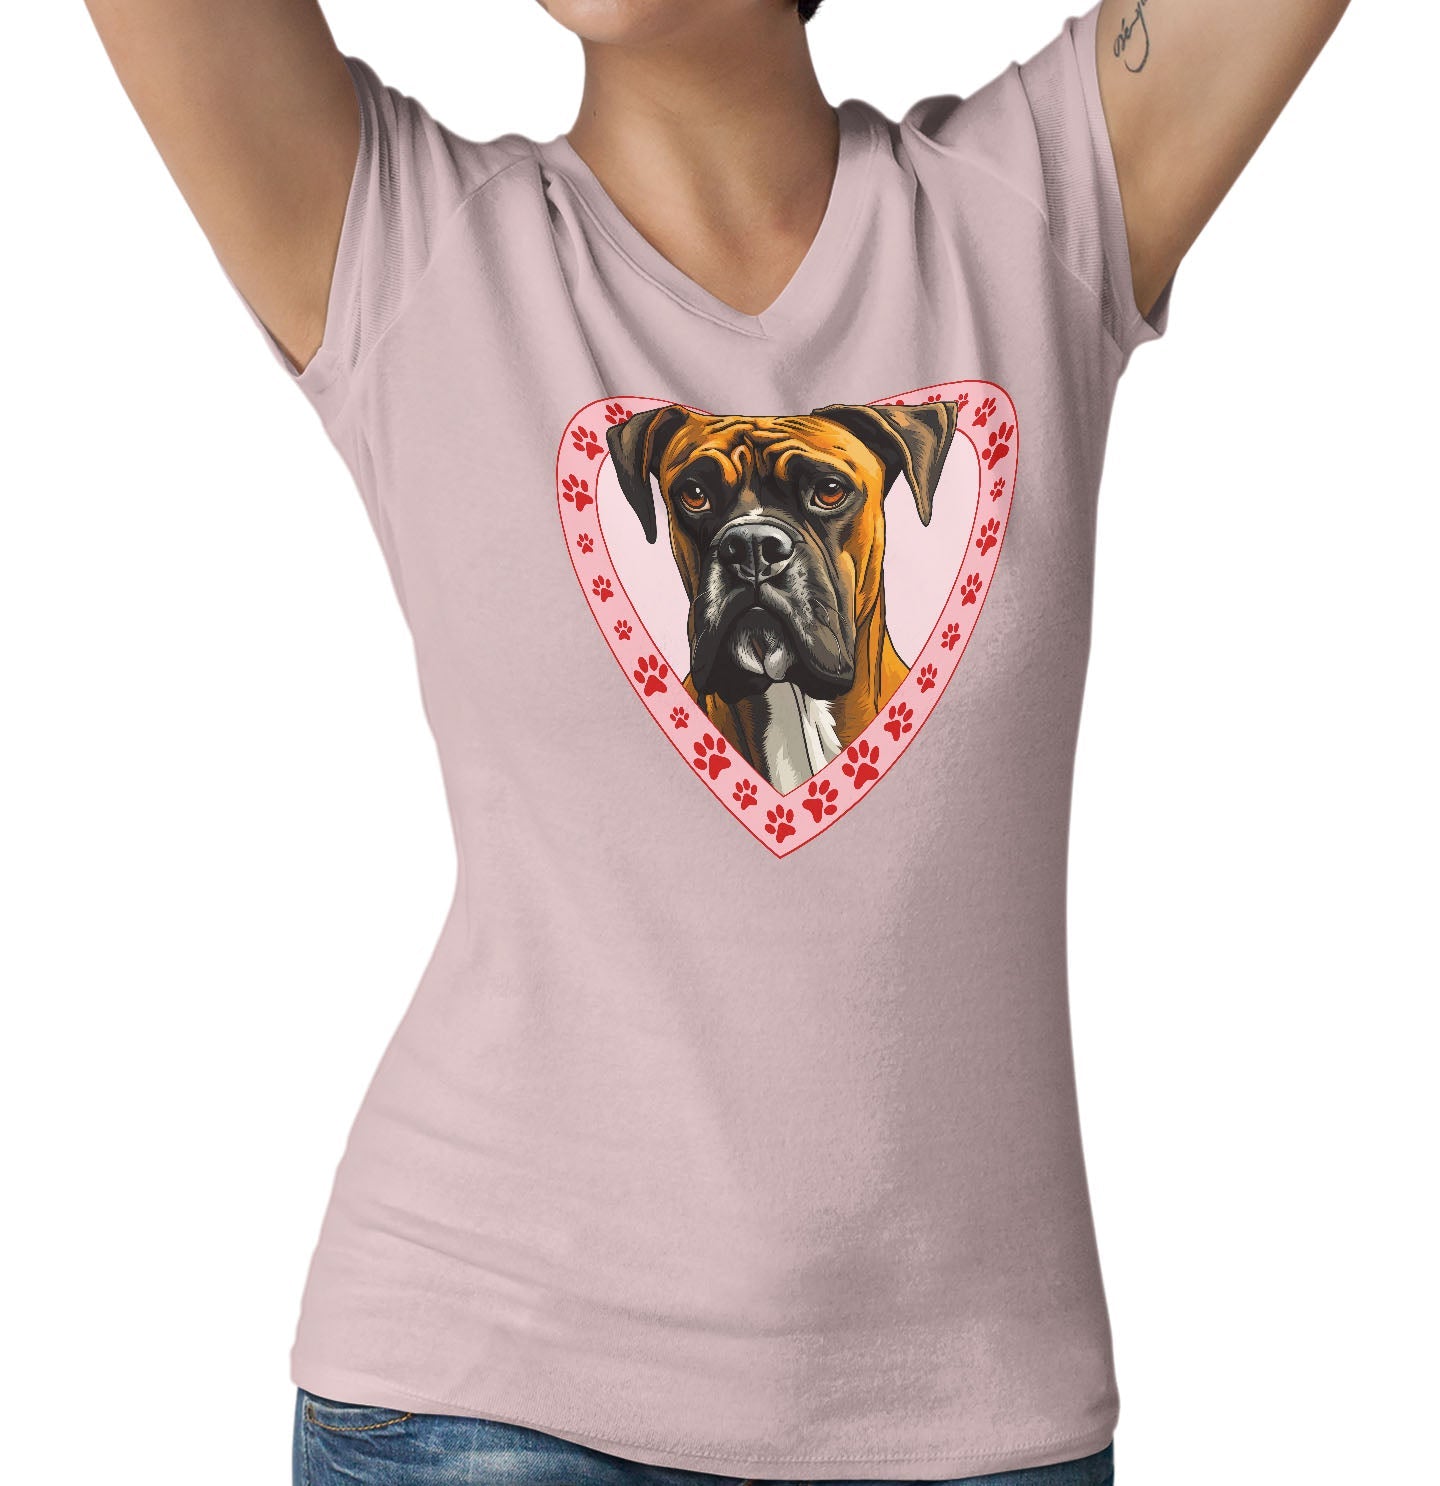 Boxer Illustration In Heart - Women's V-Neck T-Shirt